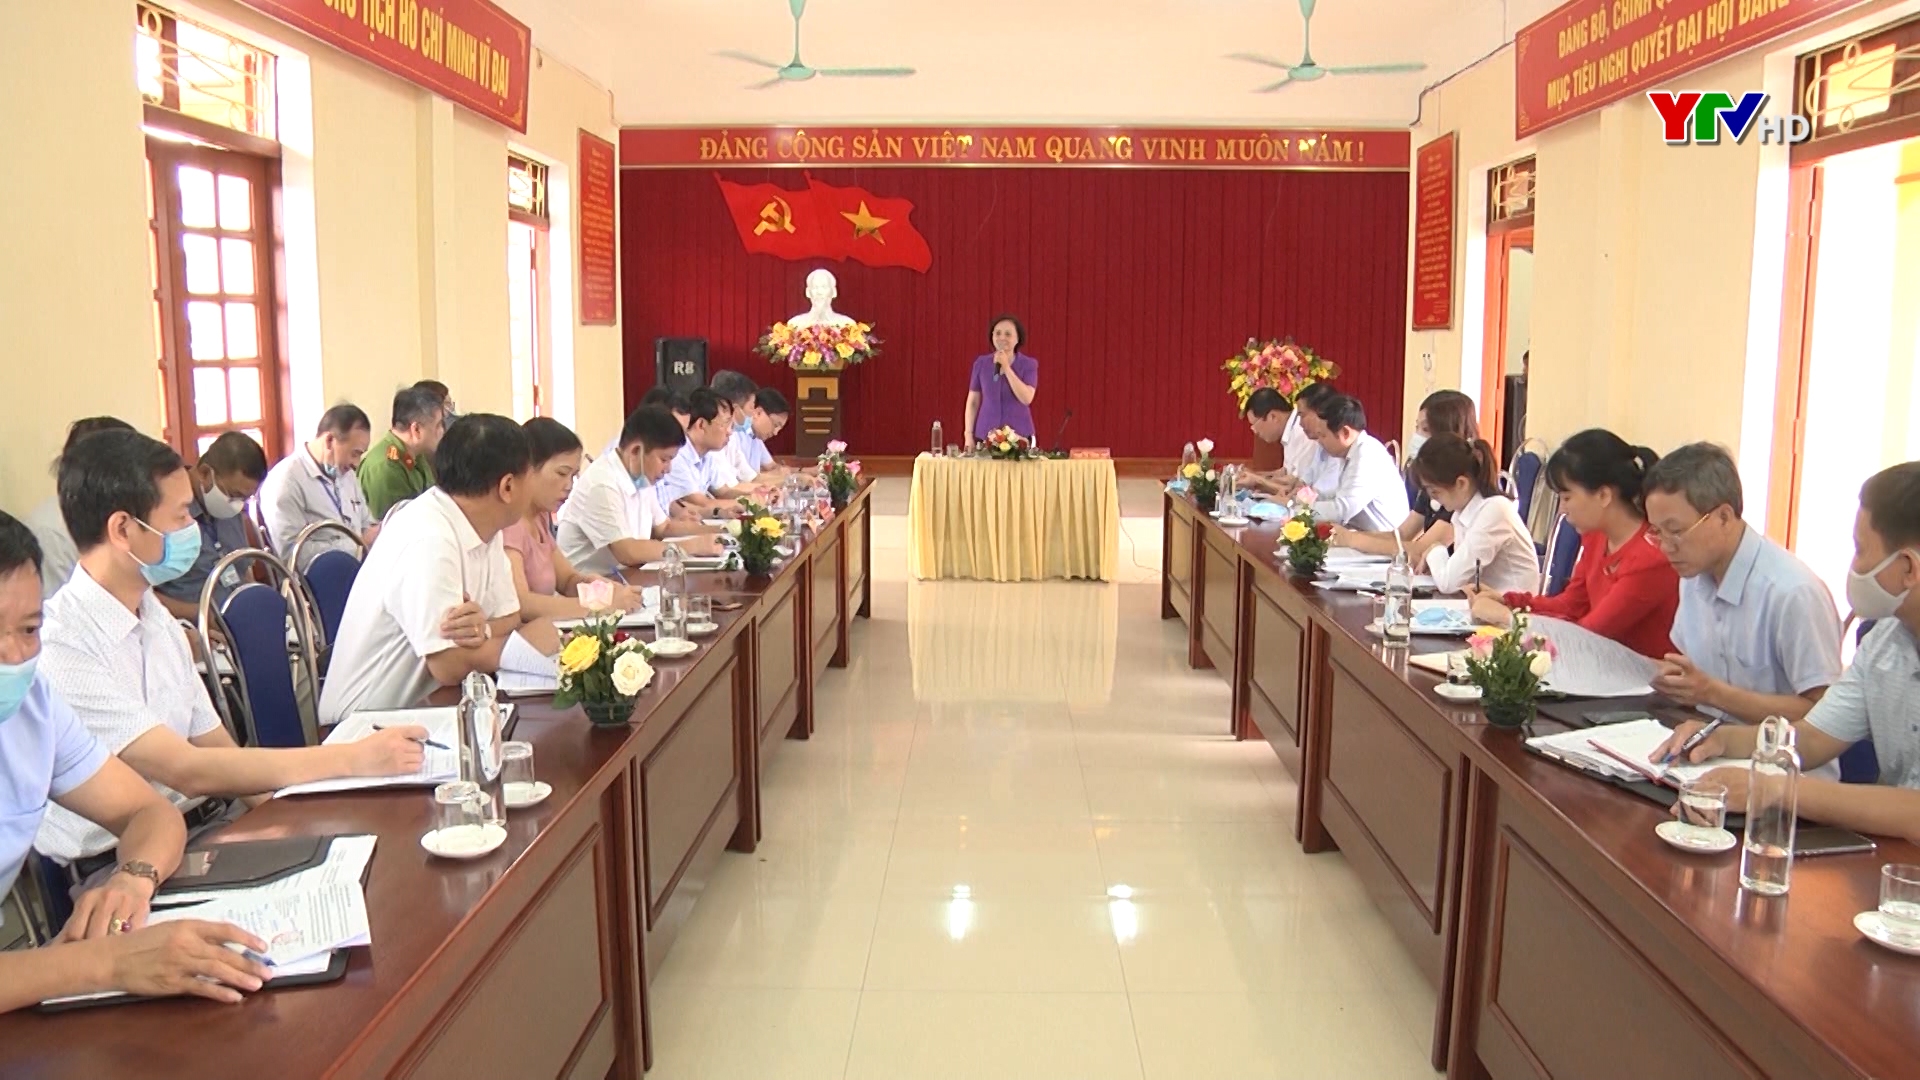 Đồng chí Bí thư Tỉnh ủy Phạm Thị Thanh Trà kiểm tra công tác phòng, chống dịch COVID - 19 và chuẩn bị thi tốt nghiệp THPT năm 2020 tại TP Yên Bái